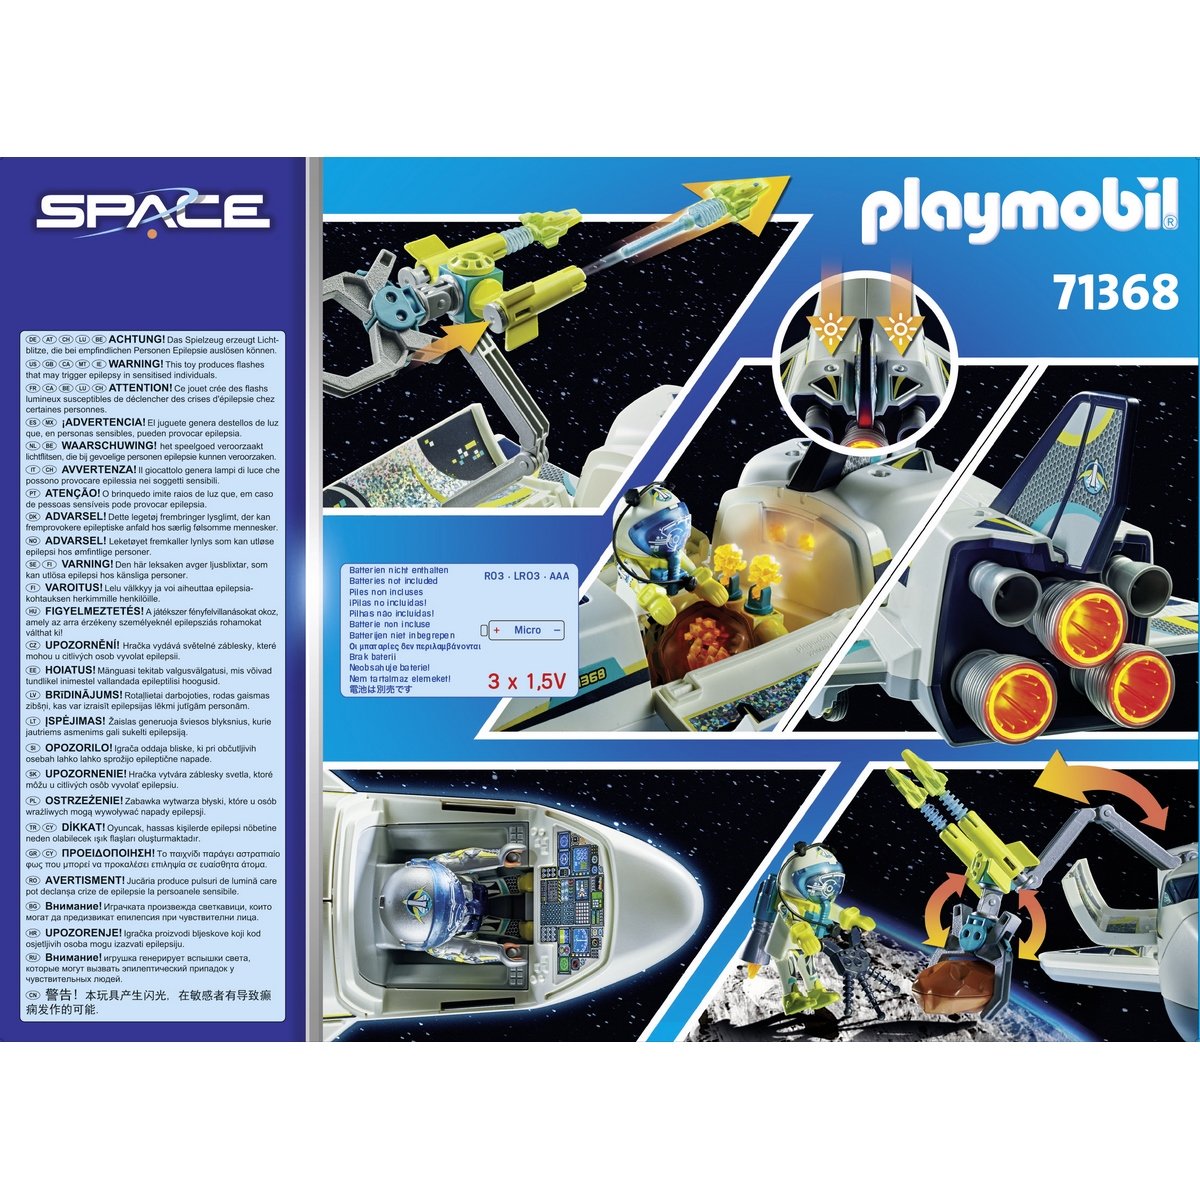 Navette spatiale Playmobil Space 71368 - La Grande Récré